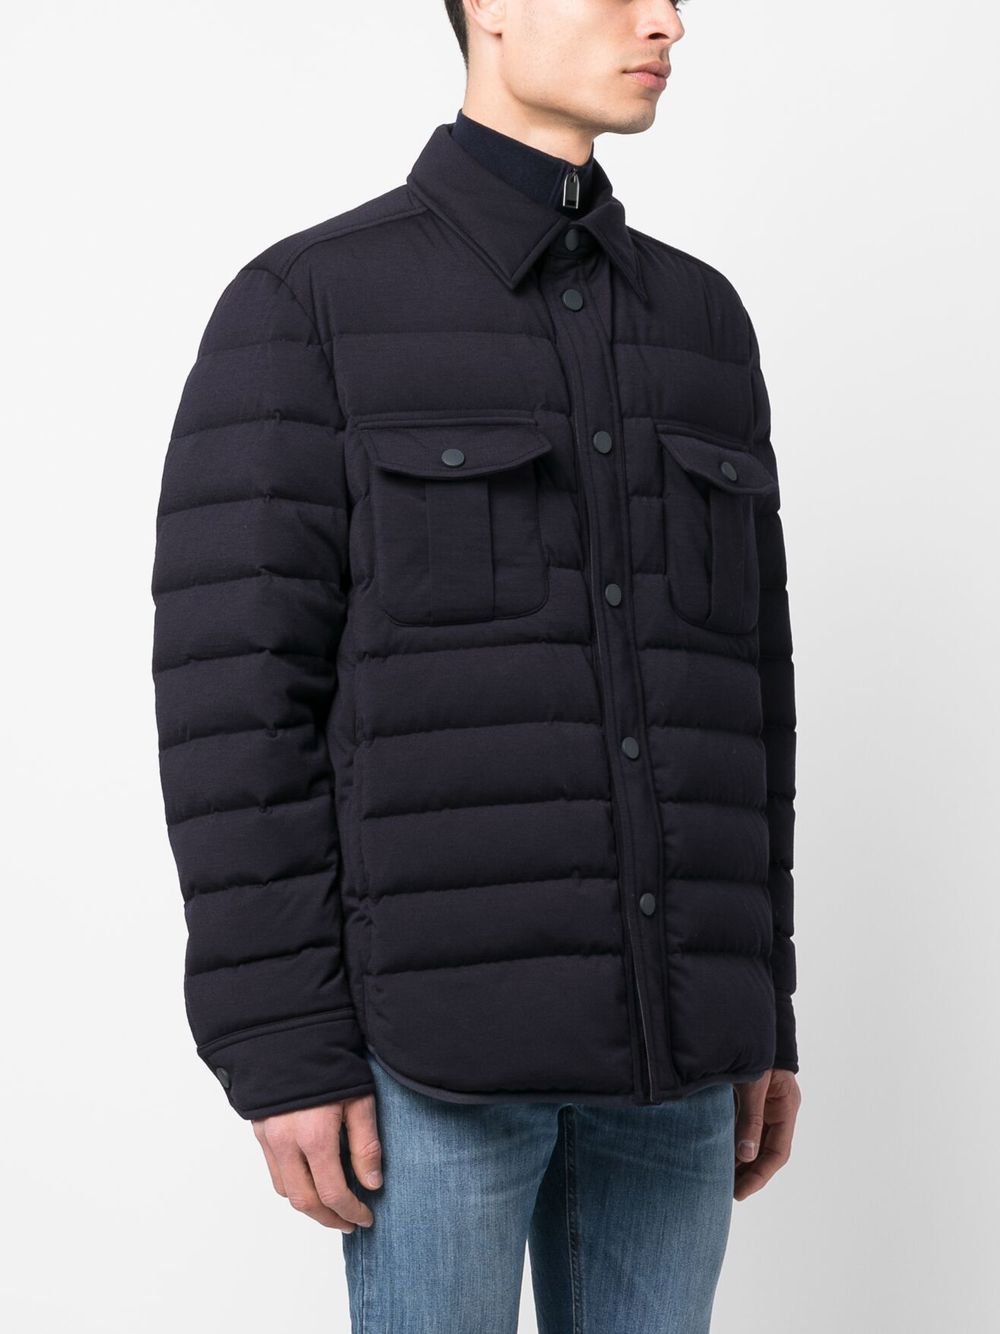 디자이너 남자 재킷 Brioni 패딩 셔츠 재킷 스프링 겉옷 캐주얼 옷 긴 소매 재킷 라펠 목 상판